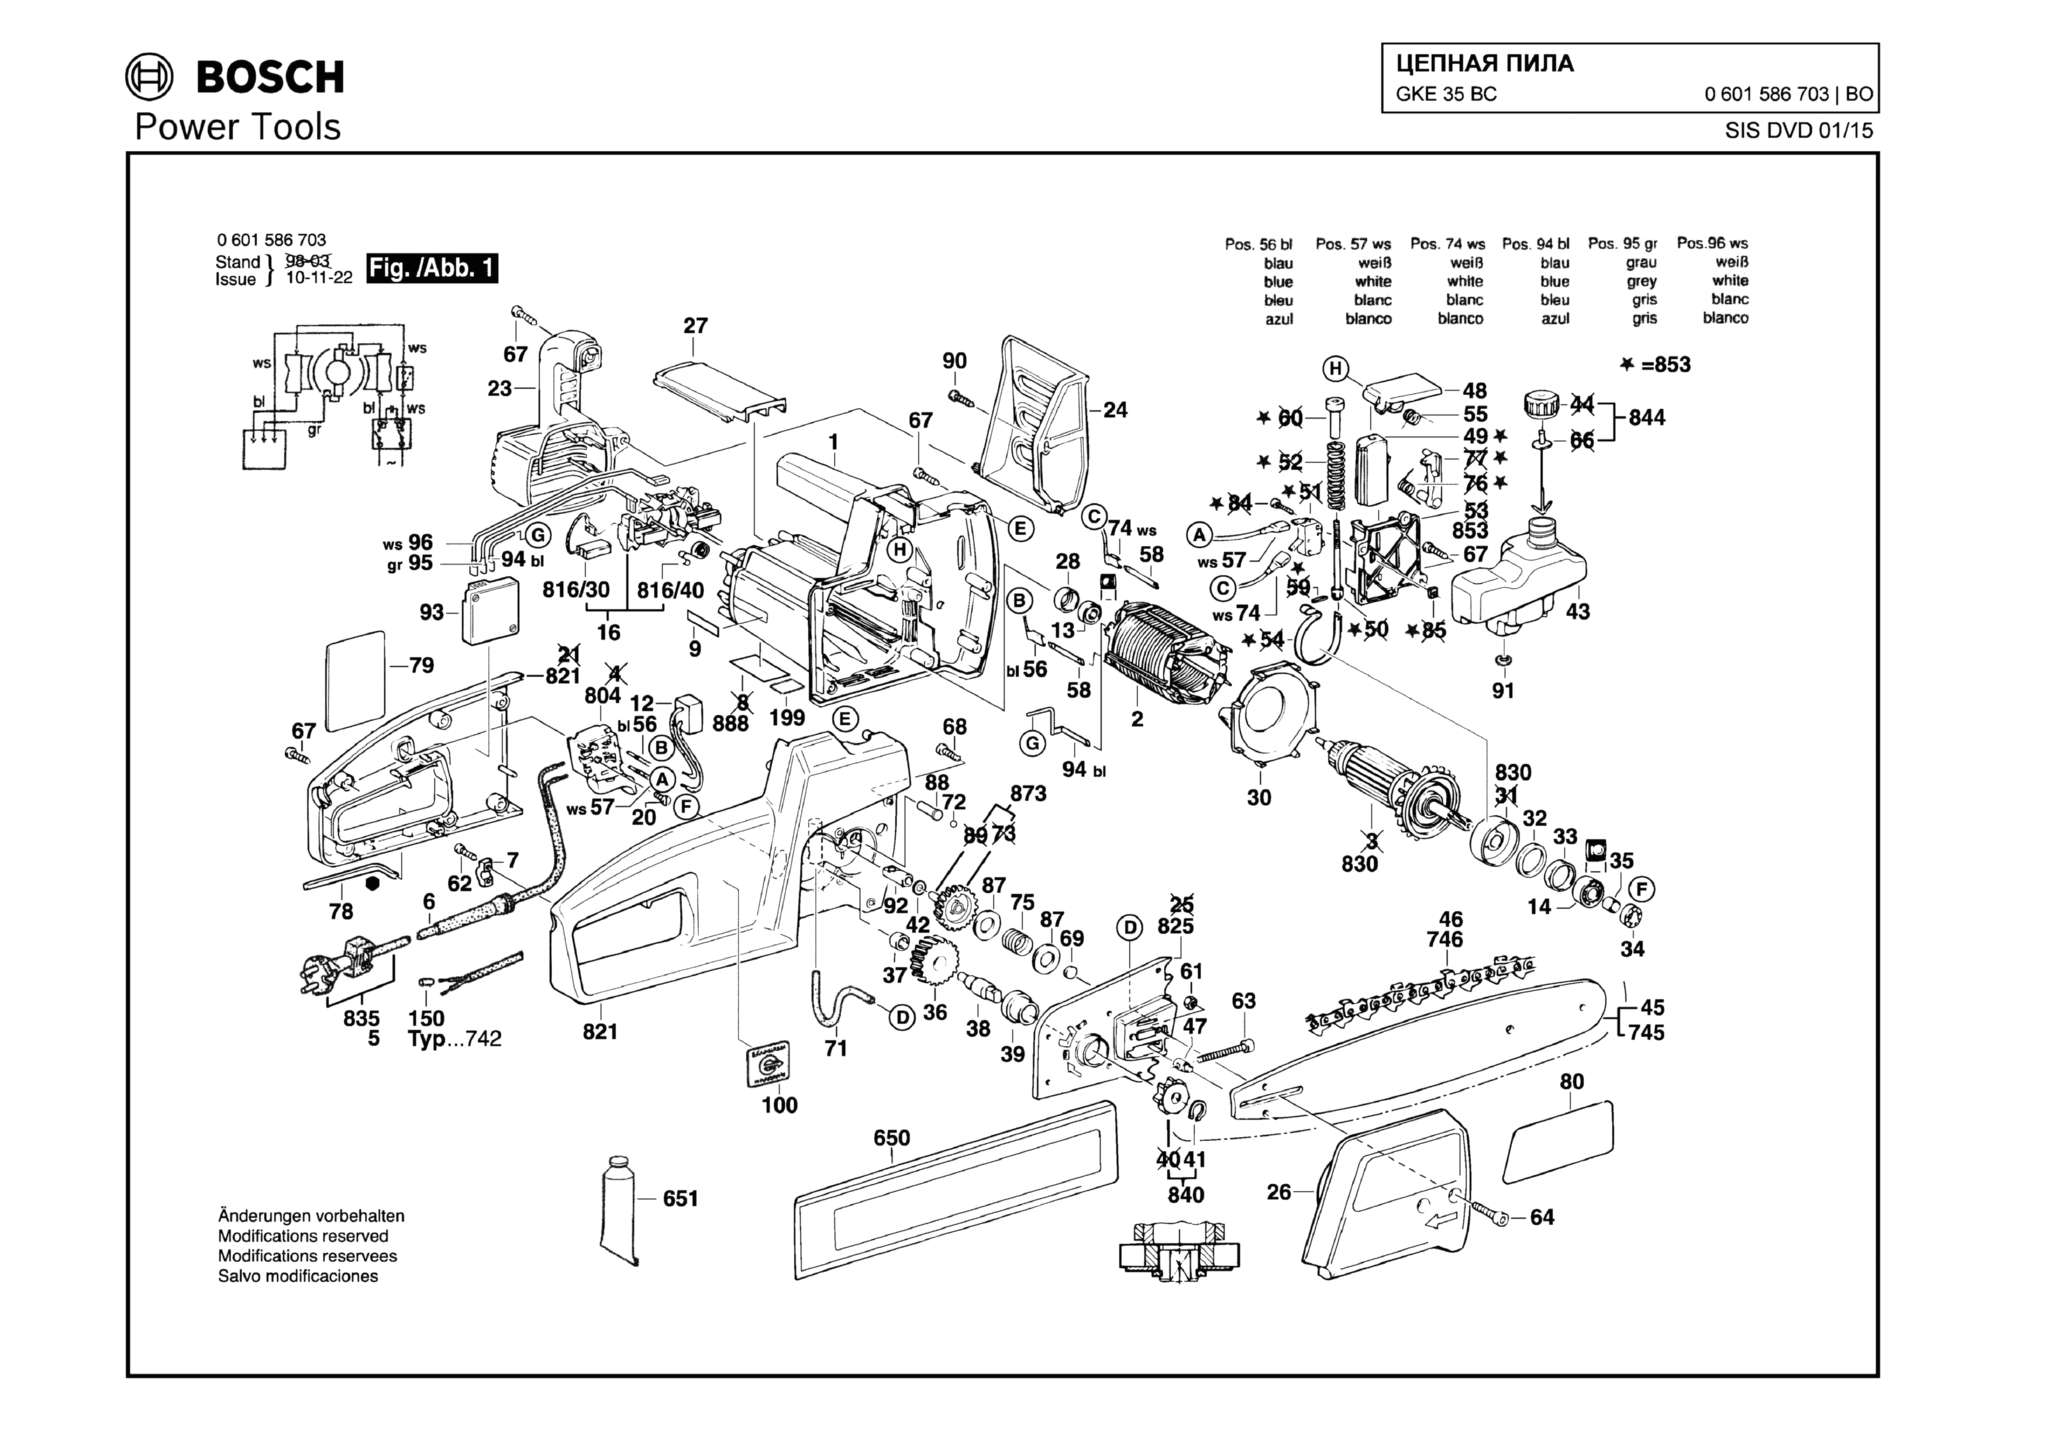 Запчасти, схема и деталировка Bosch GKE 35 BC (ТИП 0601586703)